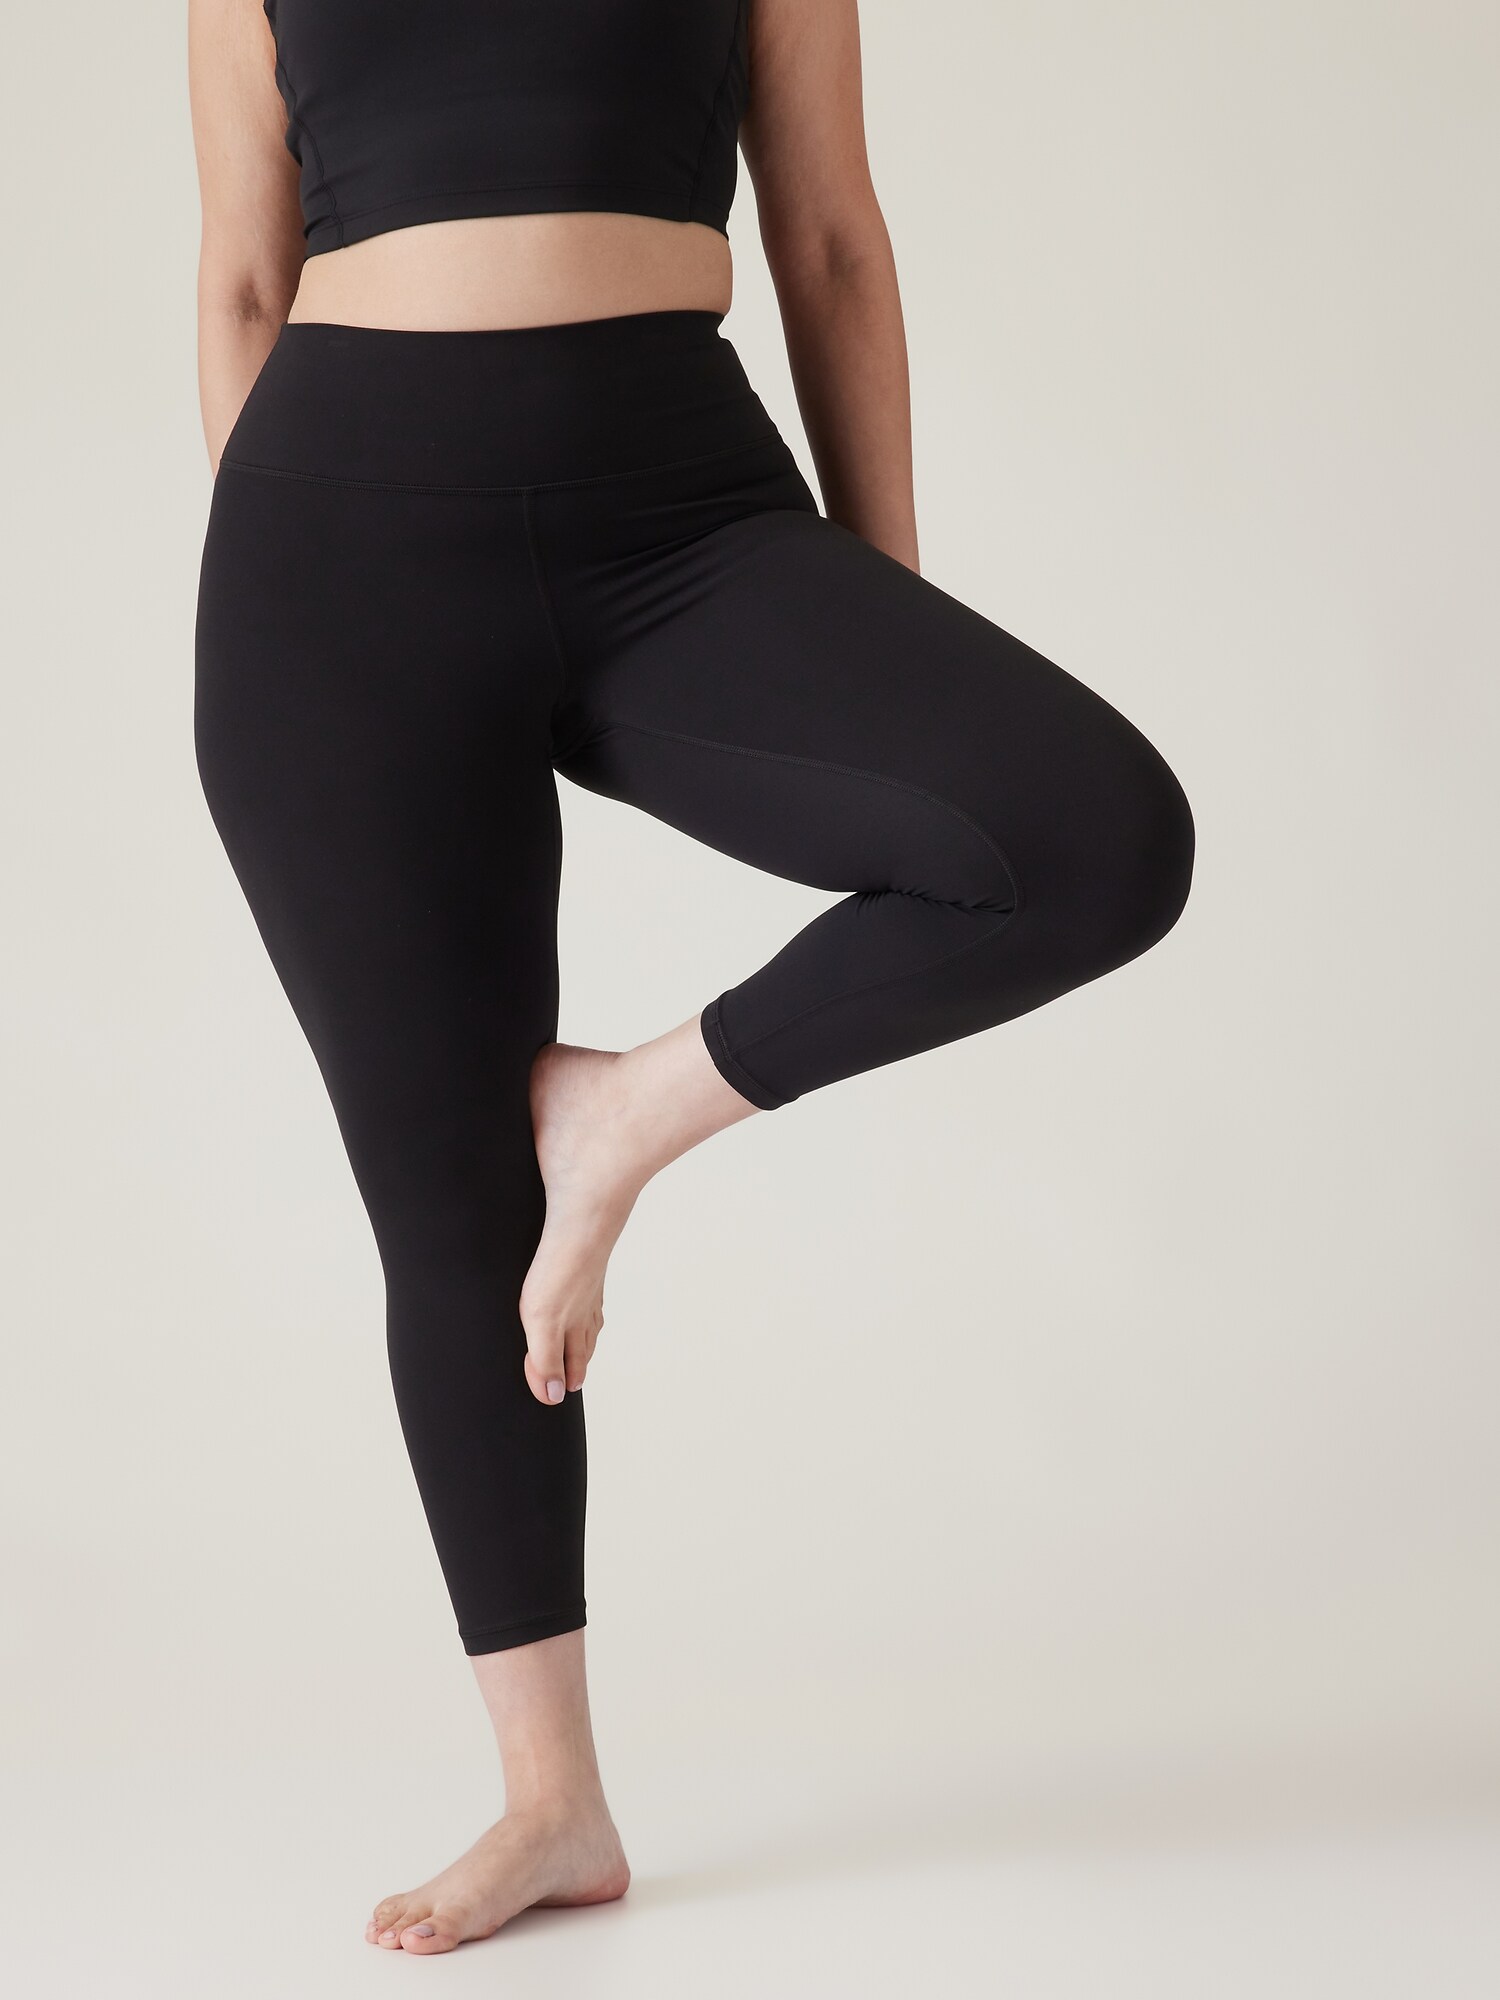 Lululemon Shiny Yoga Leggings Size 10 Large Pants Black Dance